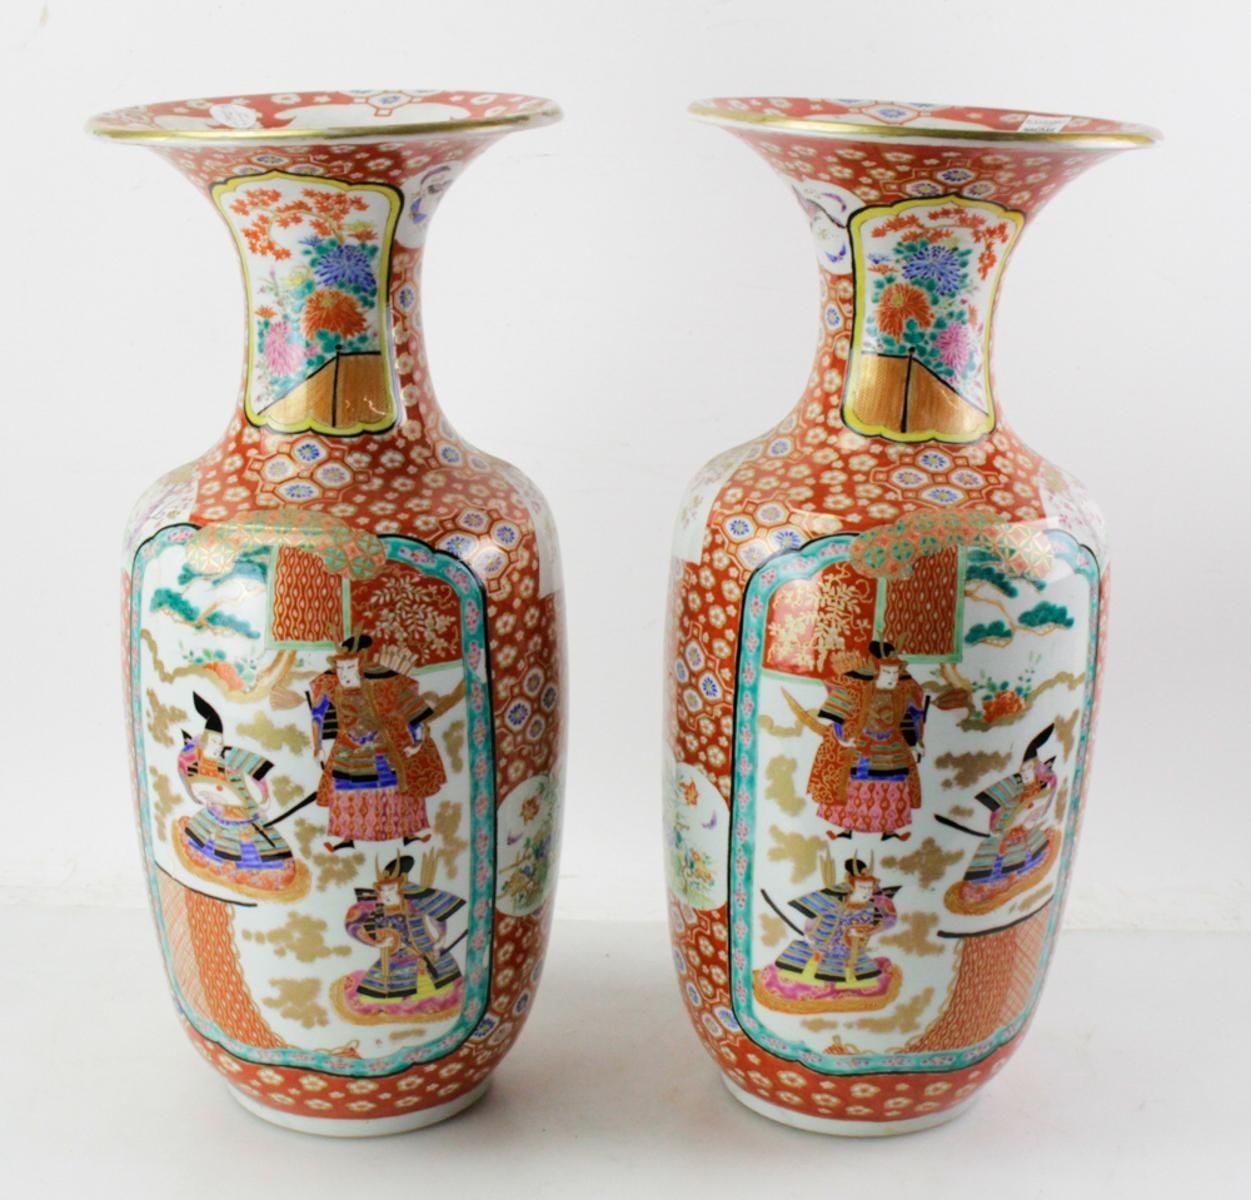 Magnifique paire de vases en porcelaine japonaise de la fin du XIXe siècle présentant un mélange envoûtant de représentations artistiques et de récits culturels. Ornés de représentations vivantes de soldats samouraïs au milieu de motifs floraux et